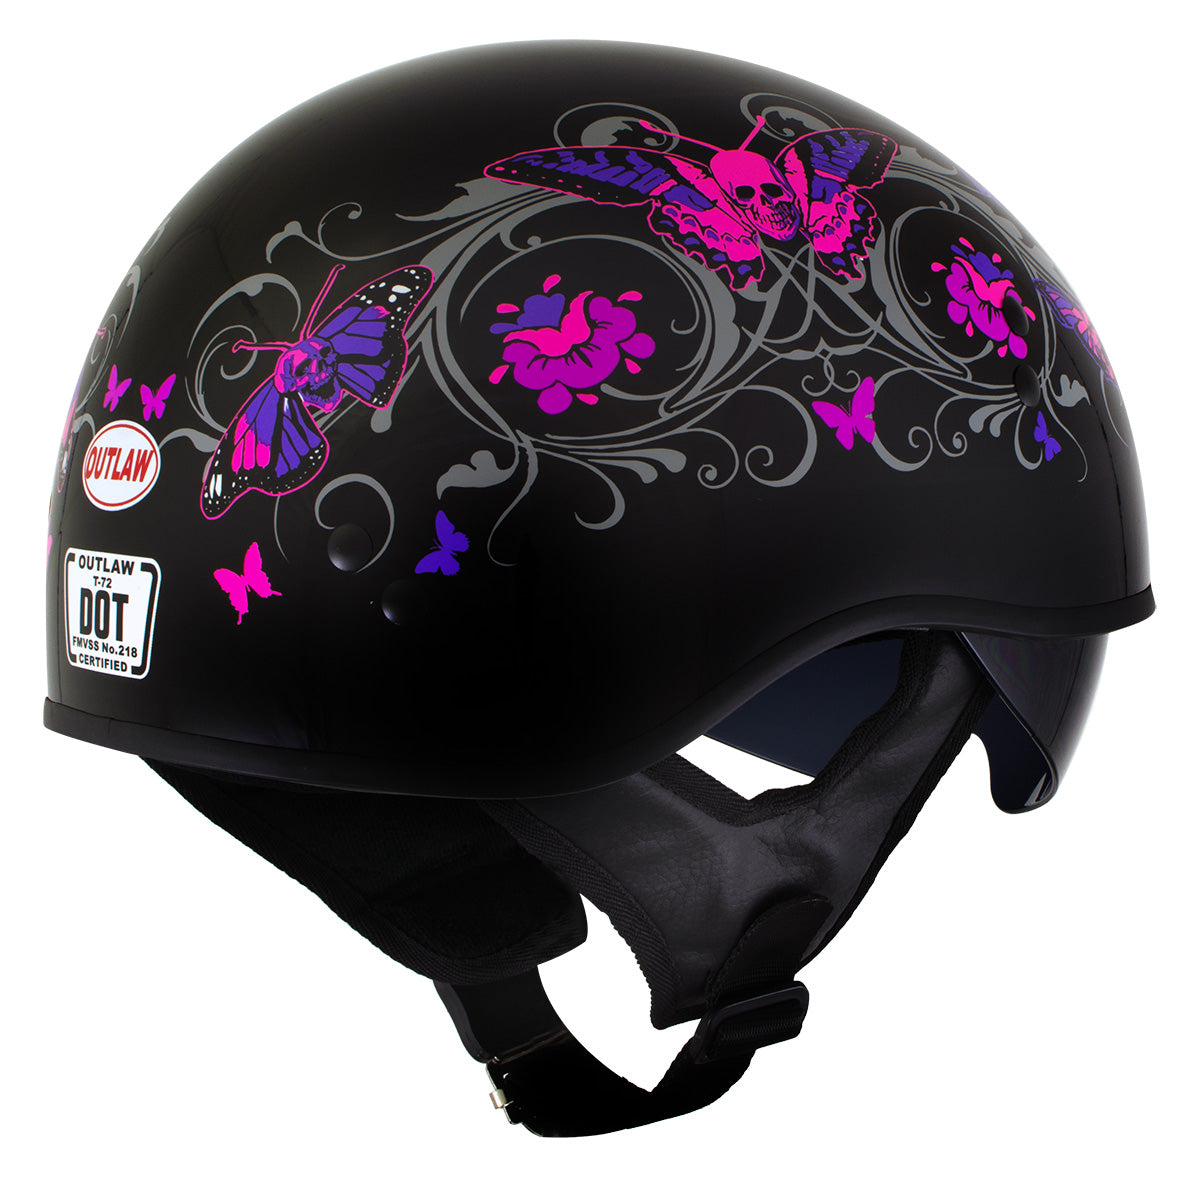 DOT Womens Motorcycle Half Helmet with Flowers